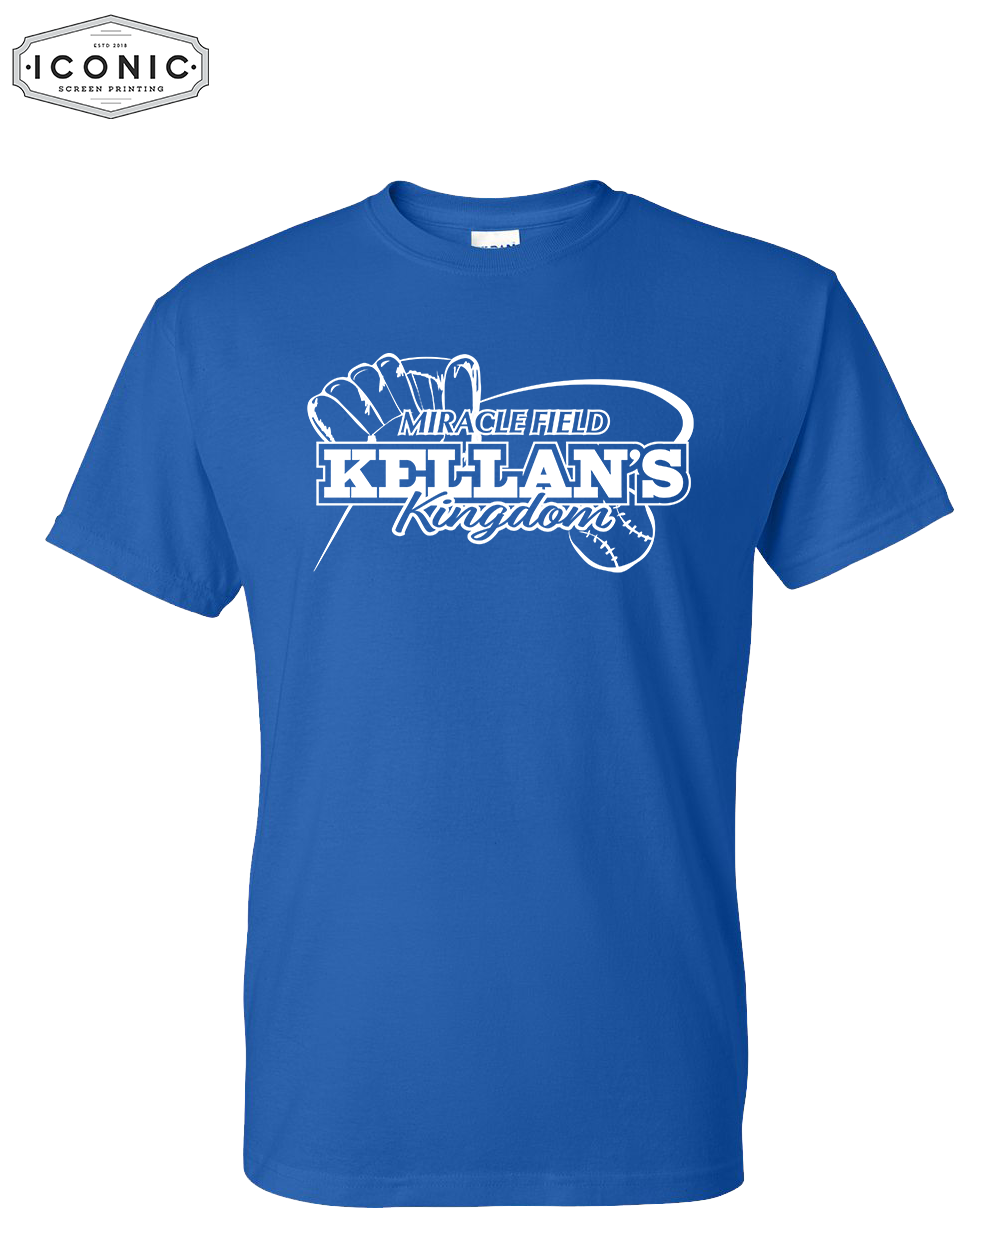 Kellan's Kingdom - DryBlend T-shirt